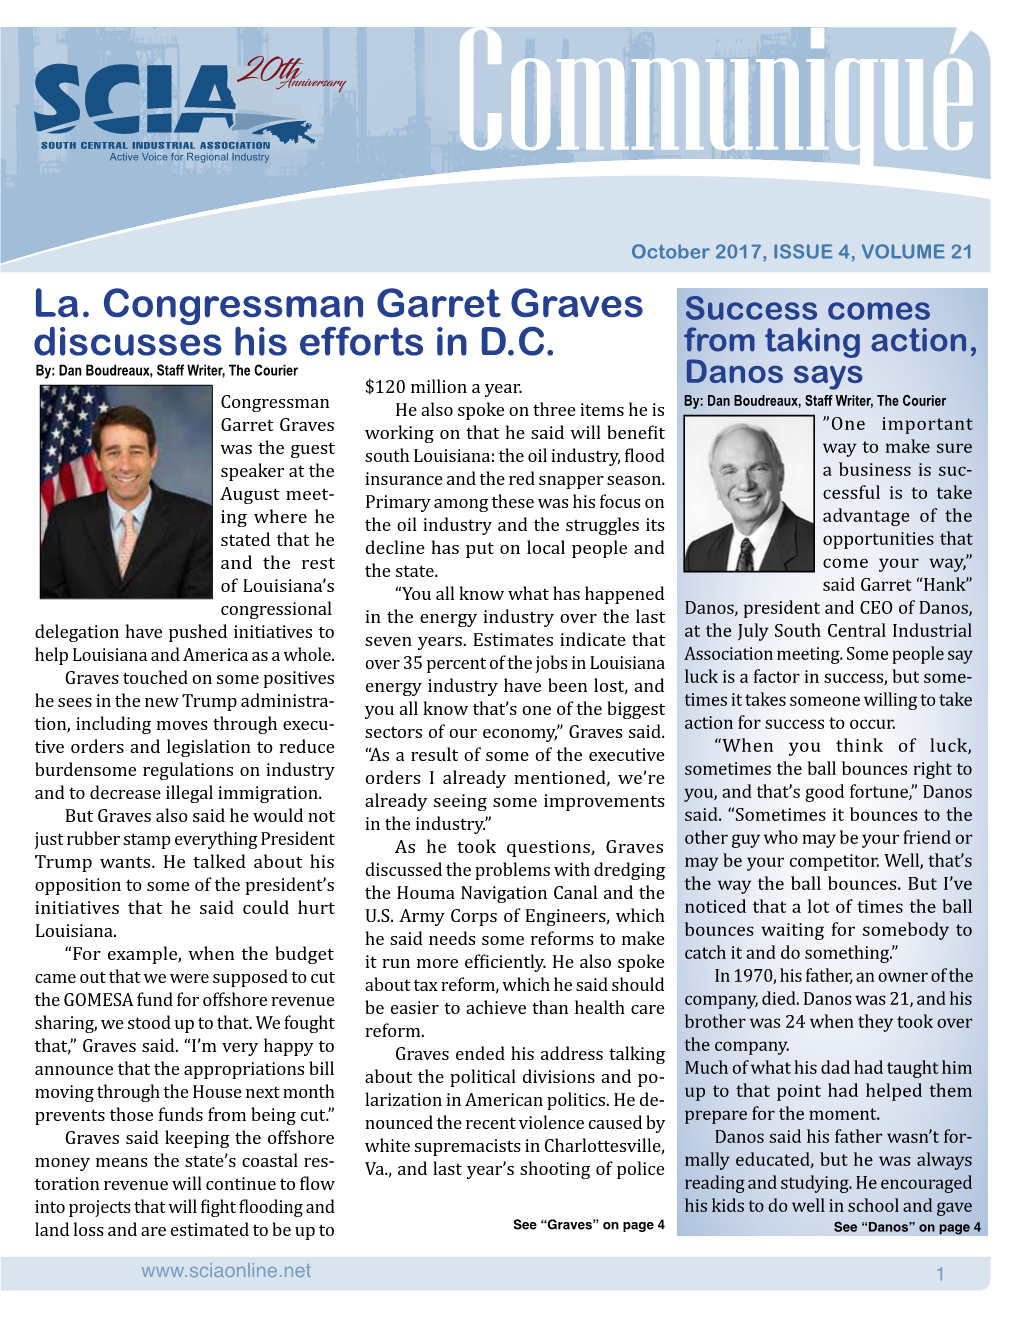 La. Congressman Garret Graves Discusses His Efforts in D.C